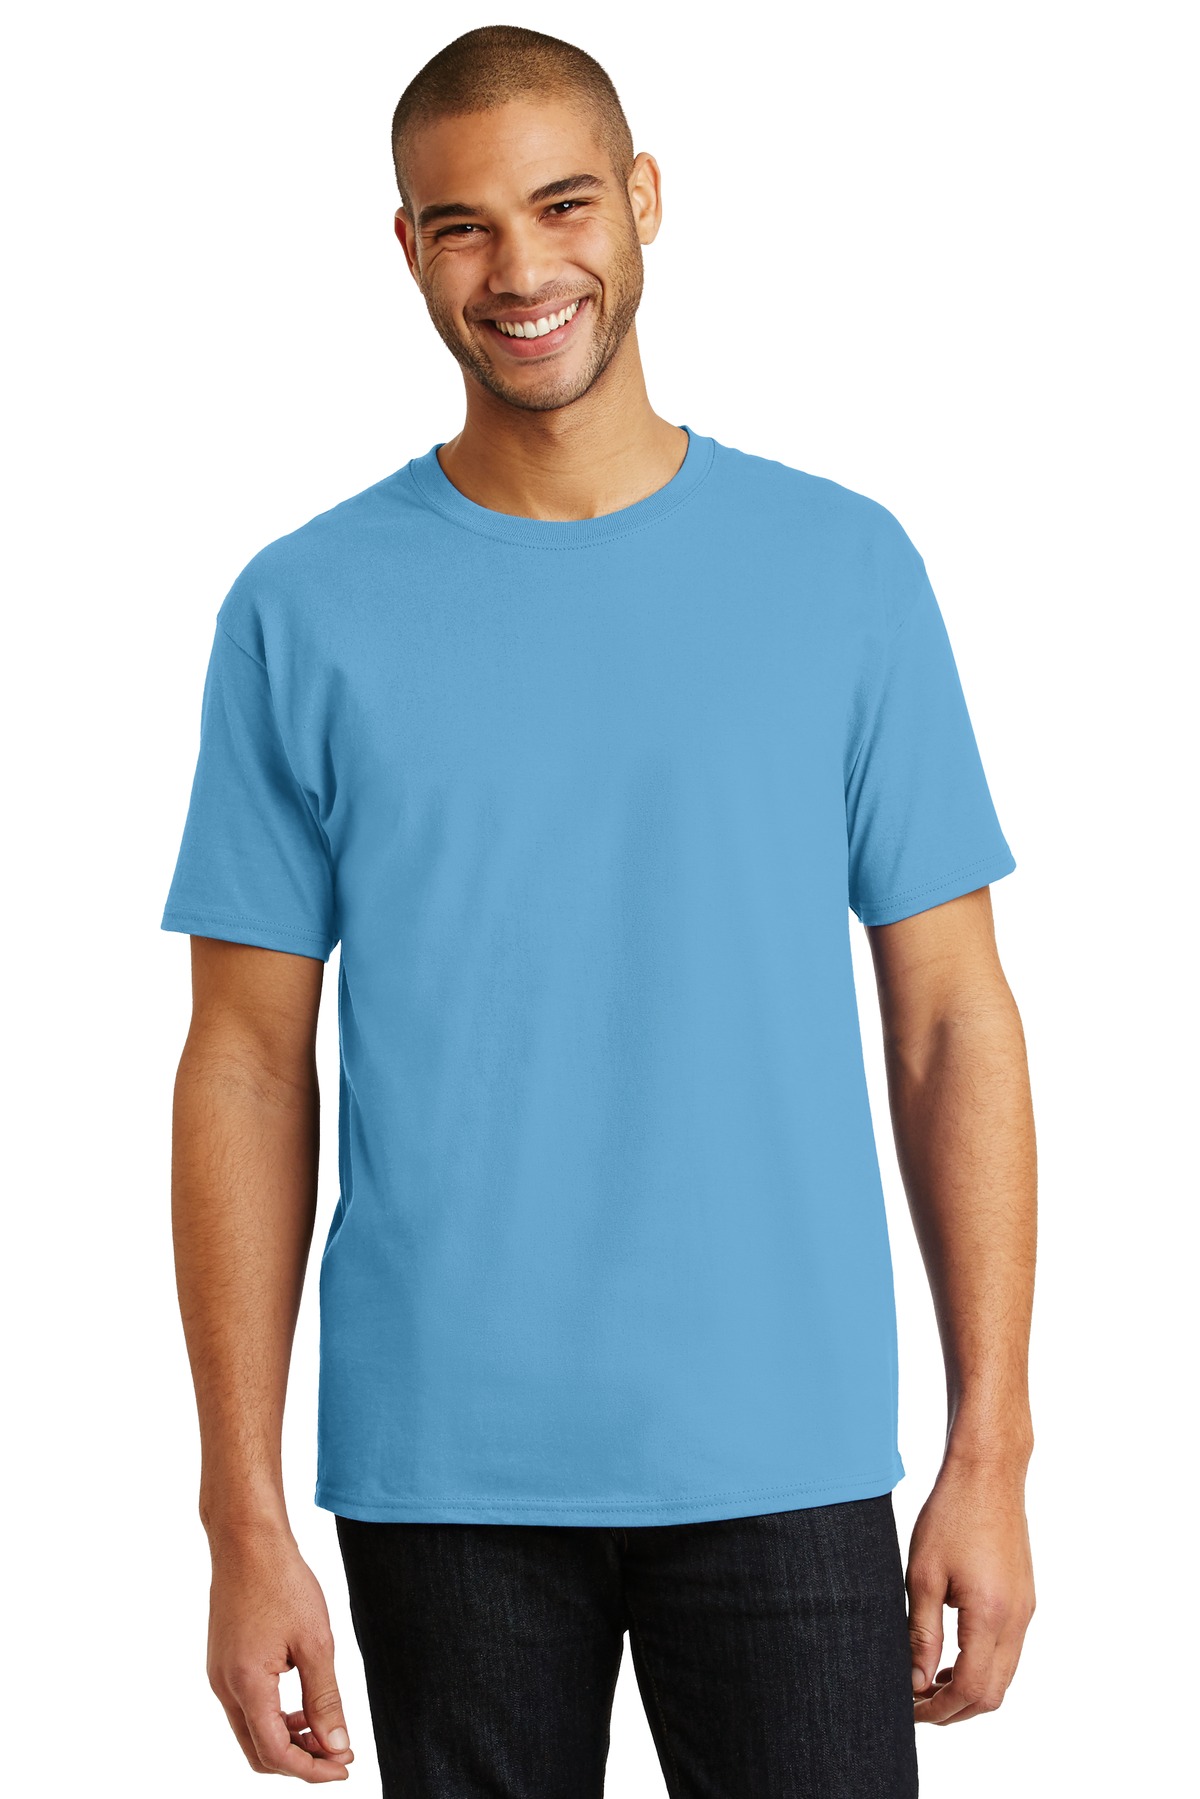 Hanes - Authentic 100% Cotton T-Shirt - 5250